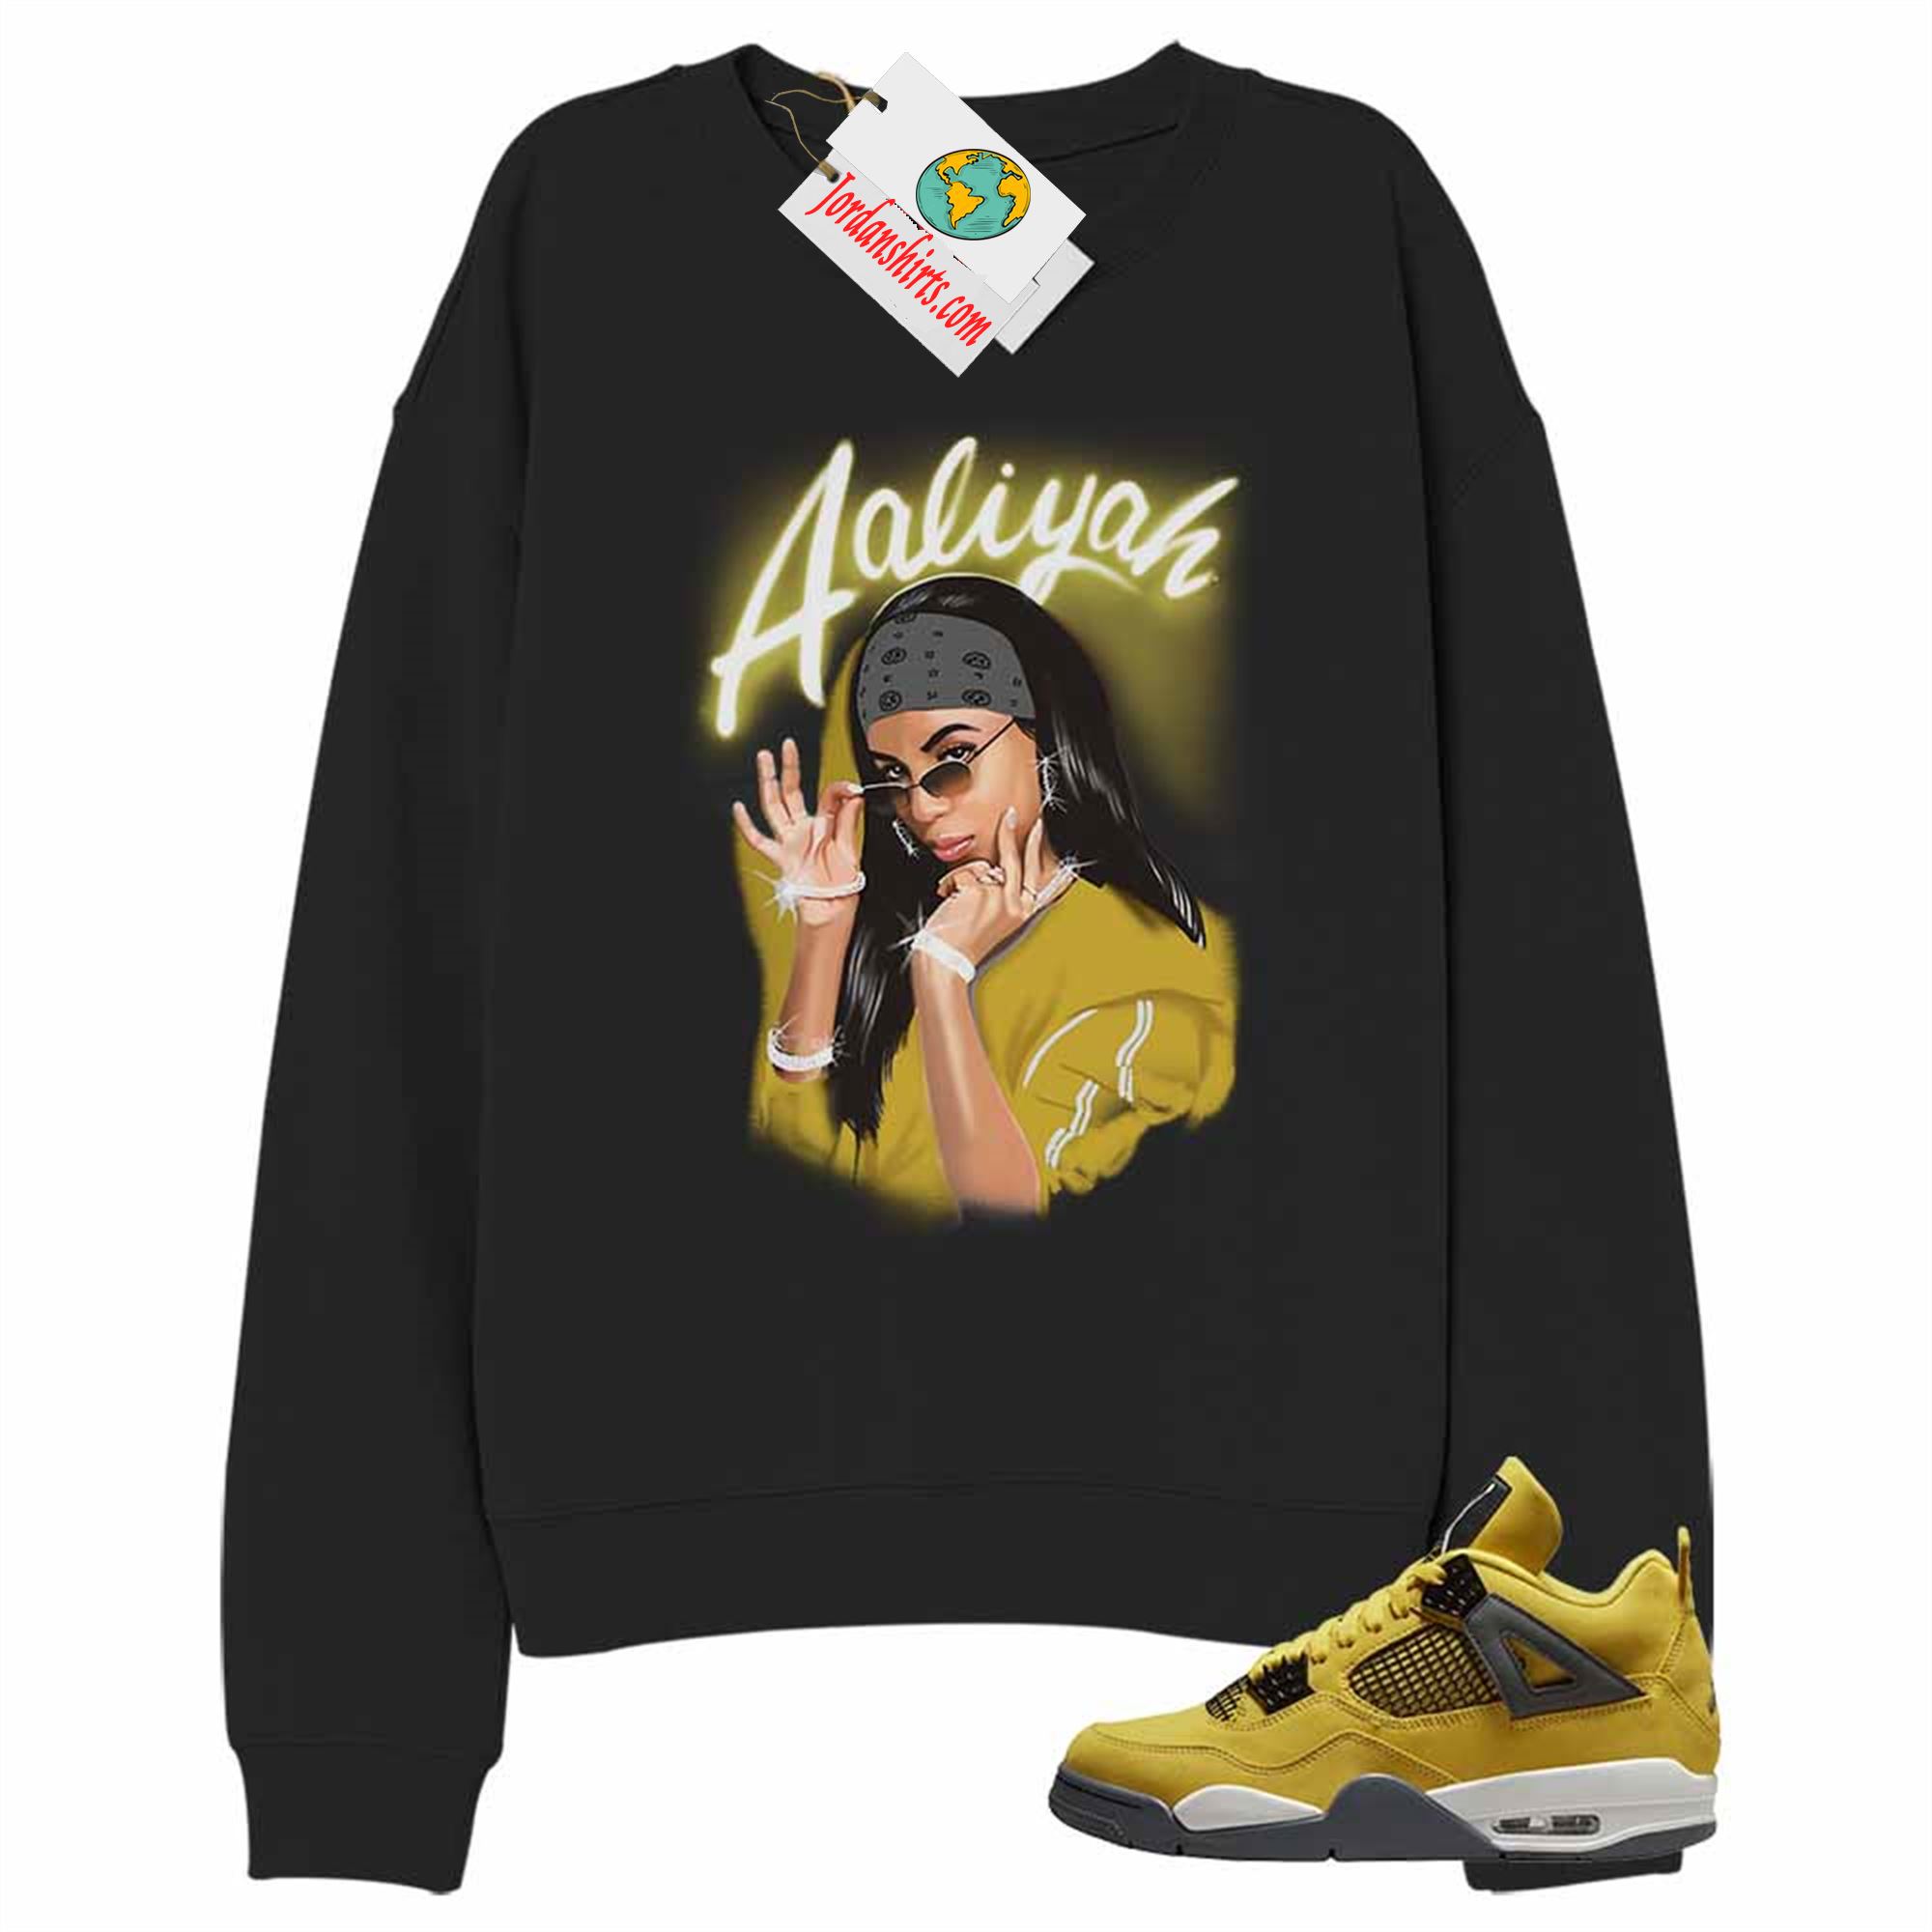 Jordan 4 Sweatshirt, Aaliyah Airbrush Black Sweatshirt Air Jordan 4 Lightning 4s Size Up To 5xl